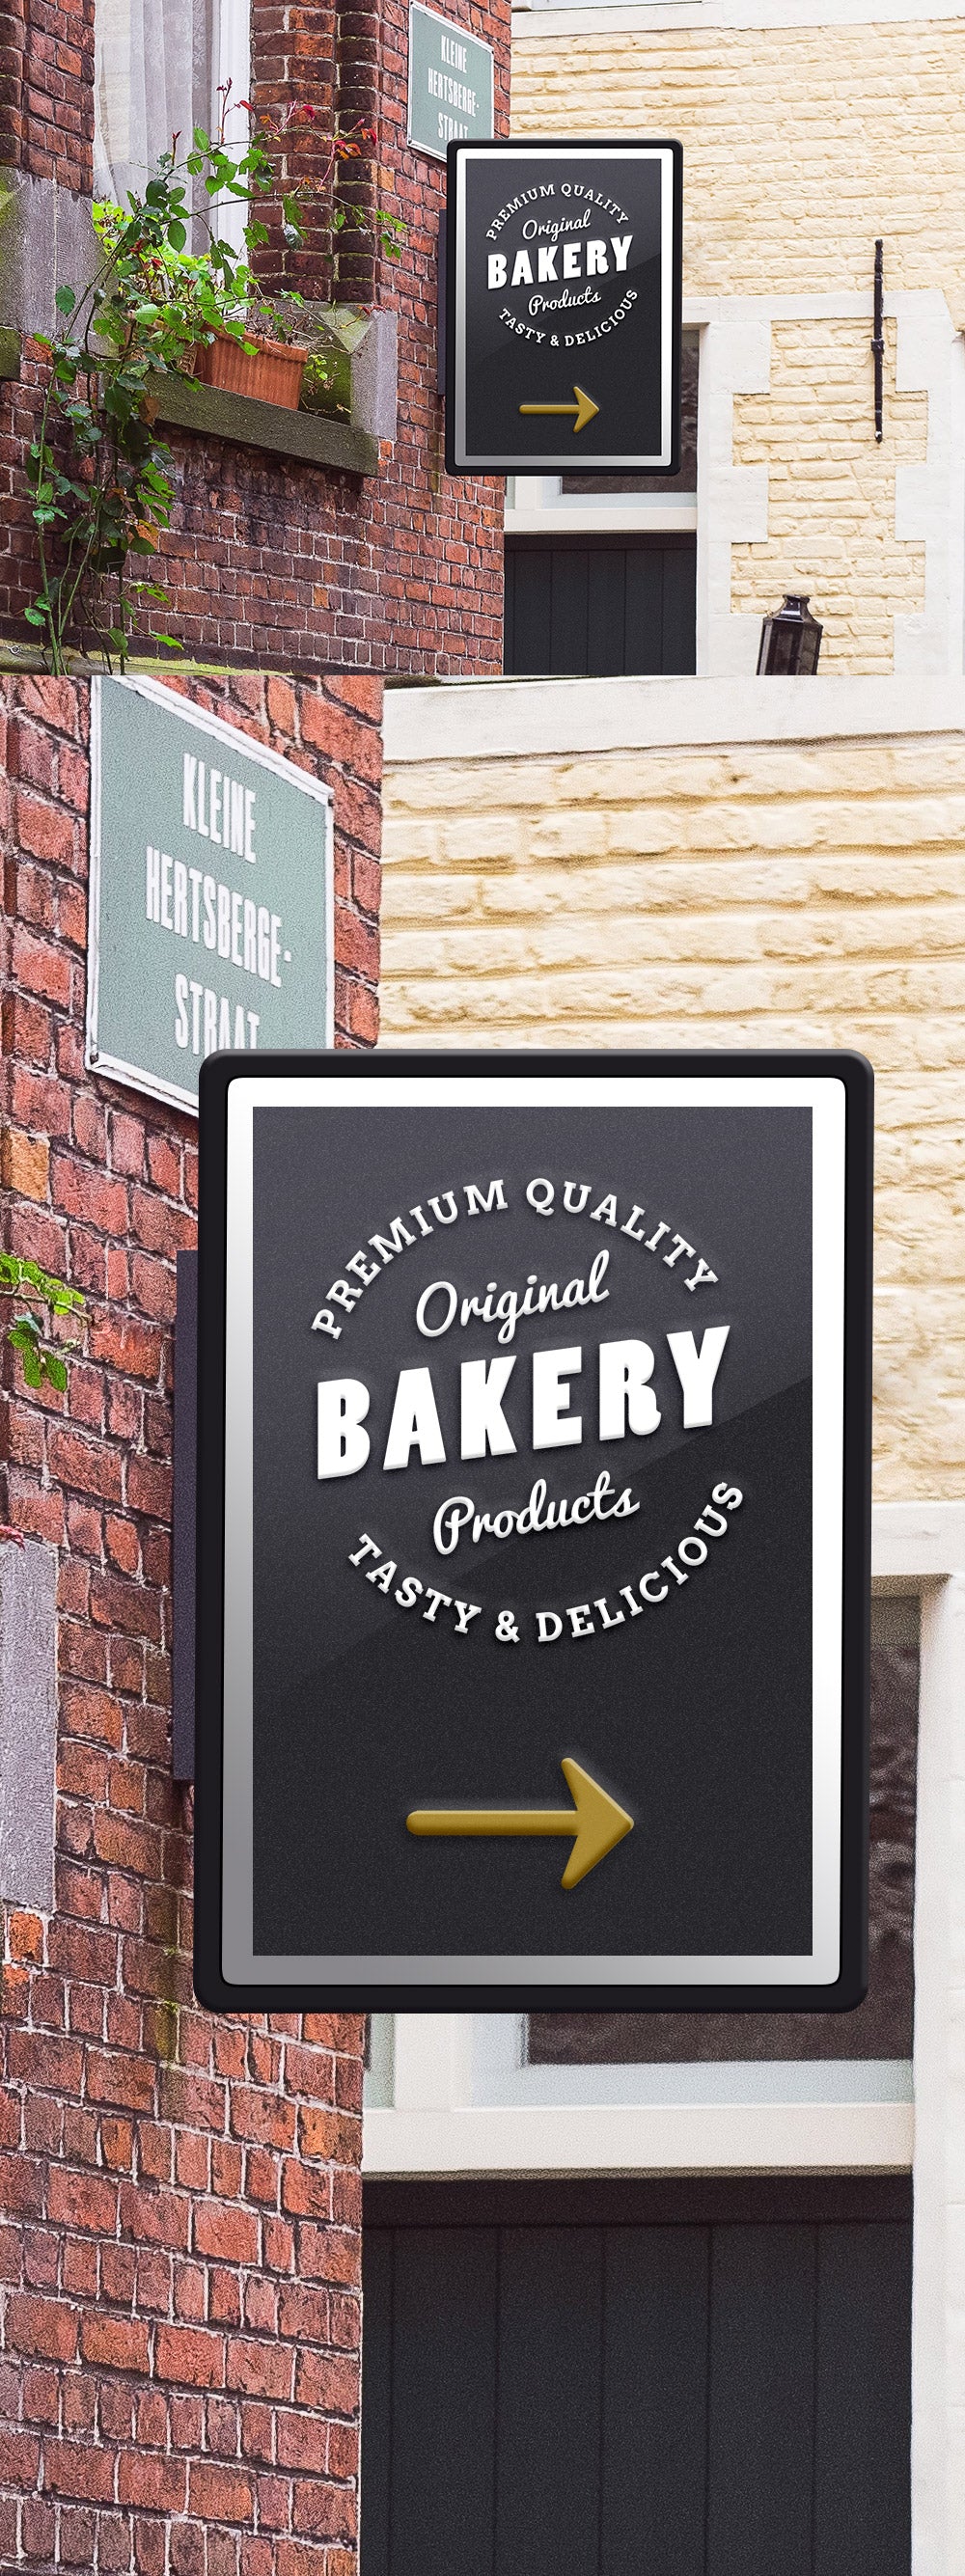 Free Public Bakery Business Signage Logo Mockup